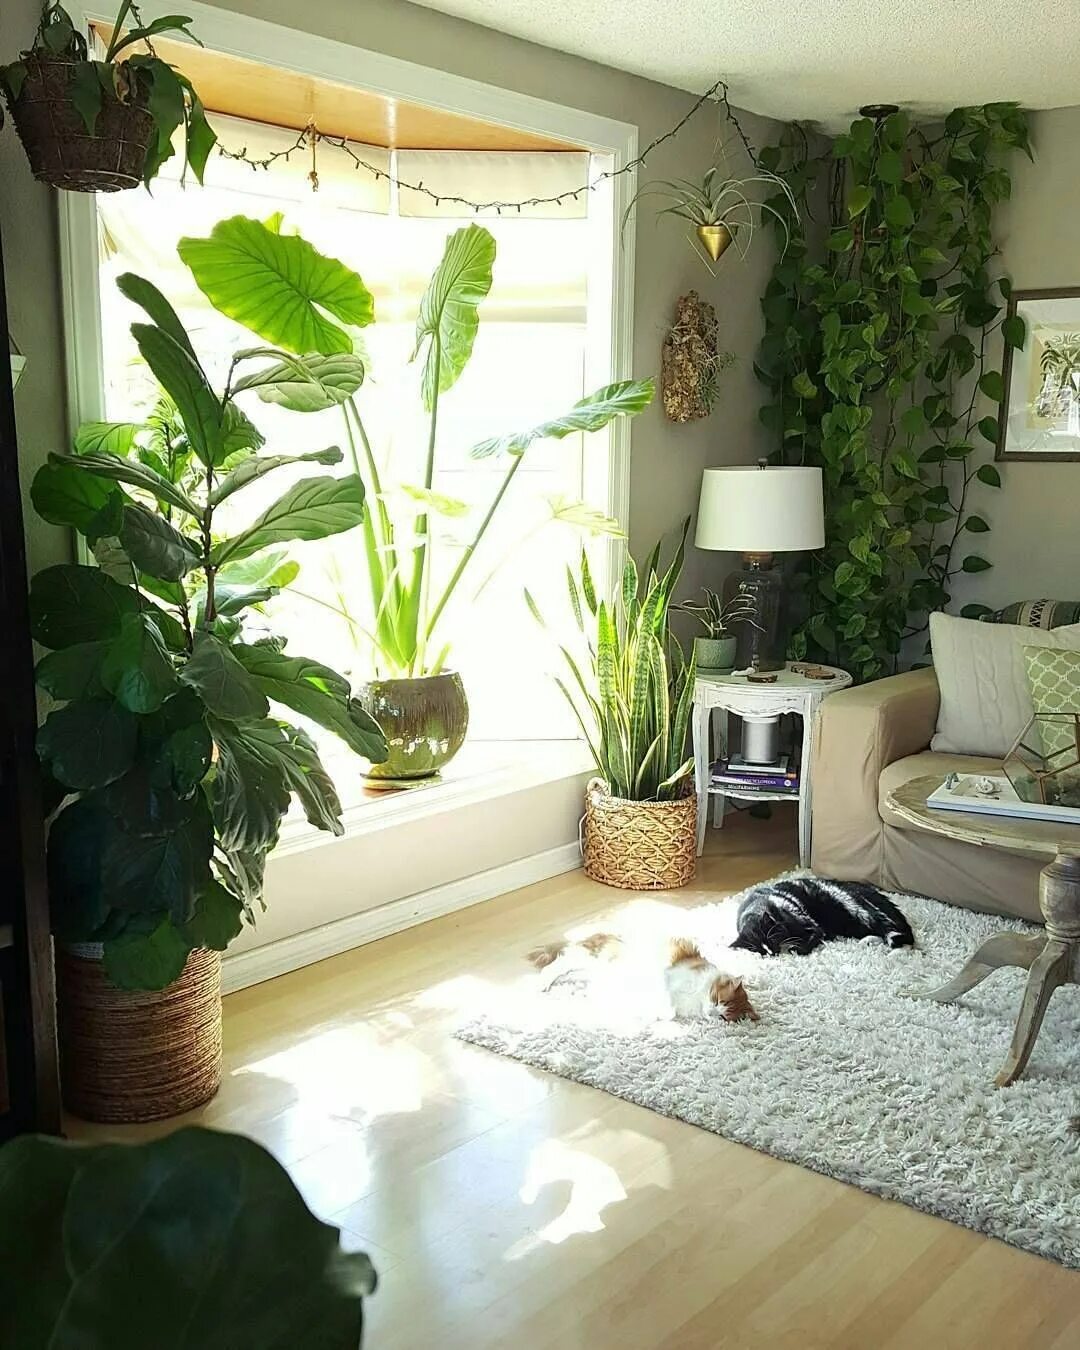 Комната без растений. Комната с растениями. Комнатные цветы в Интер. Комнатные растения в интерьере. Растения в интерьере гостиной.